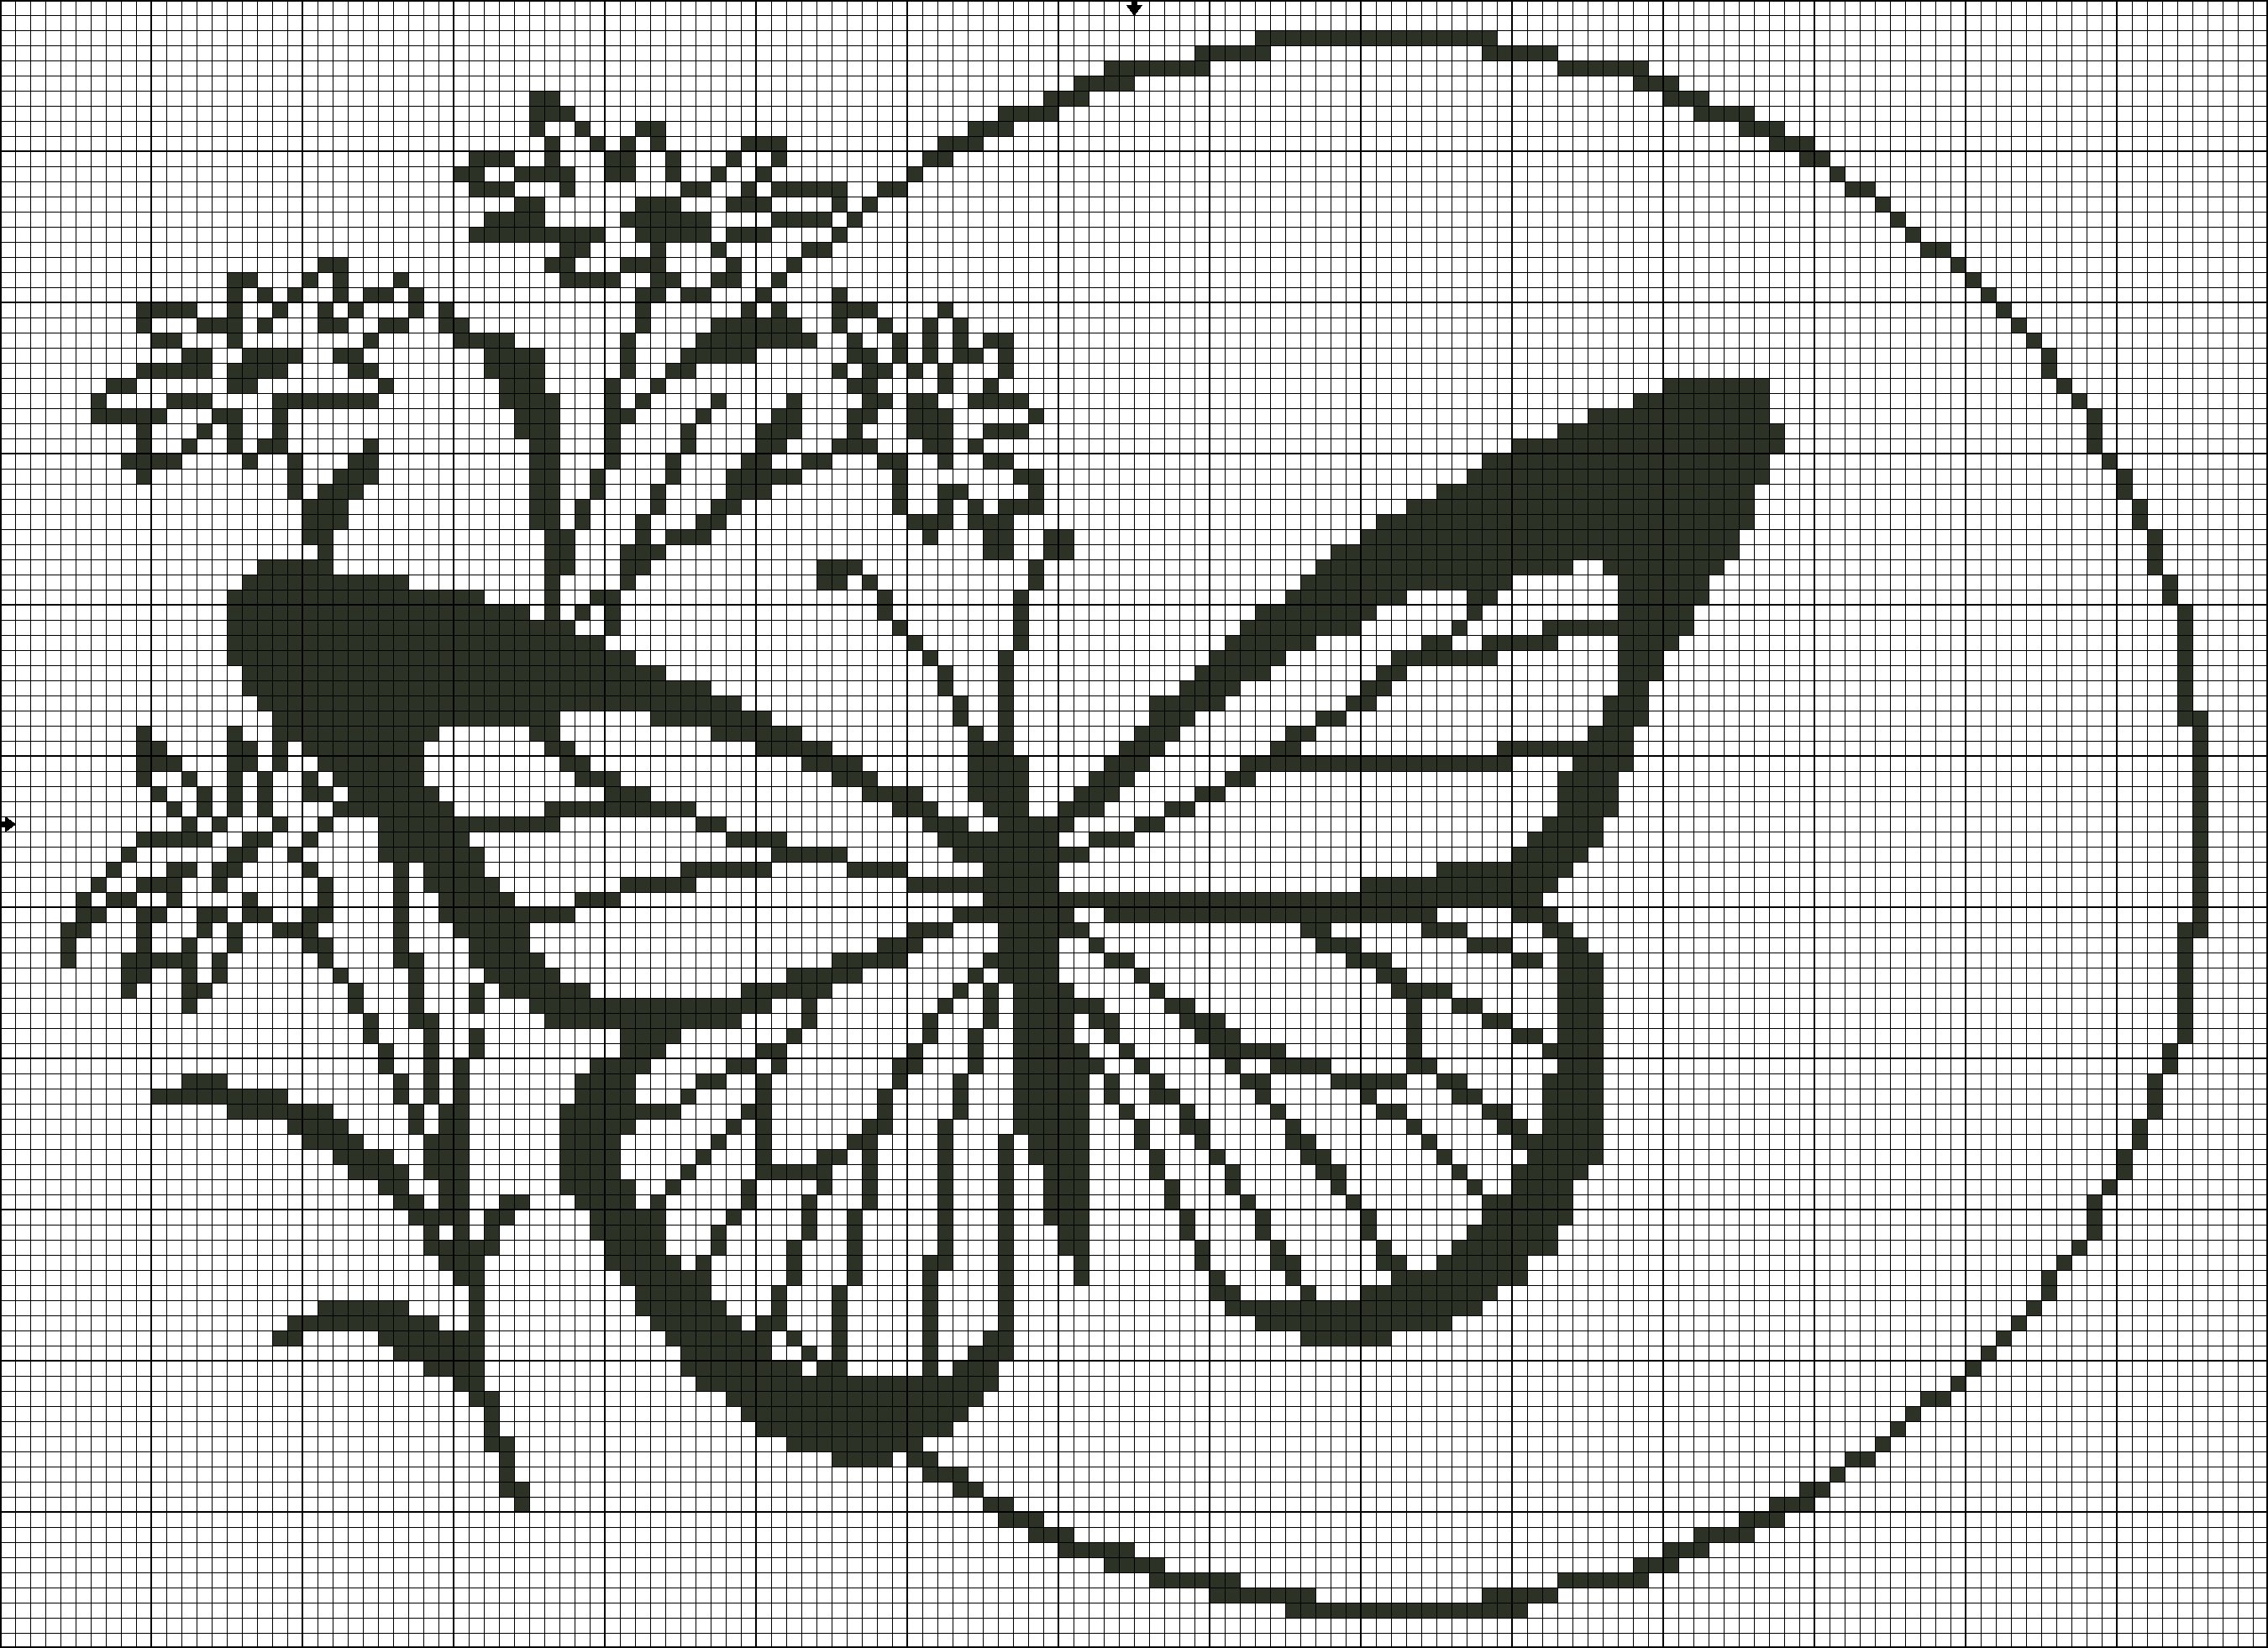 Вышивка крестом схемы бабочек монохромные